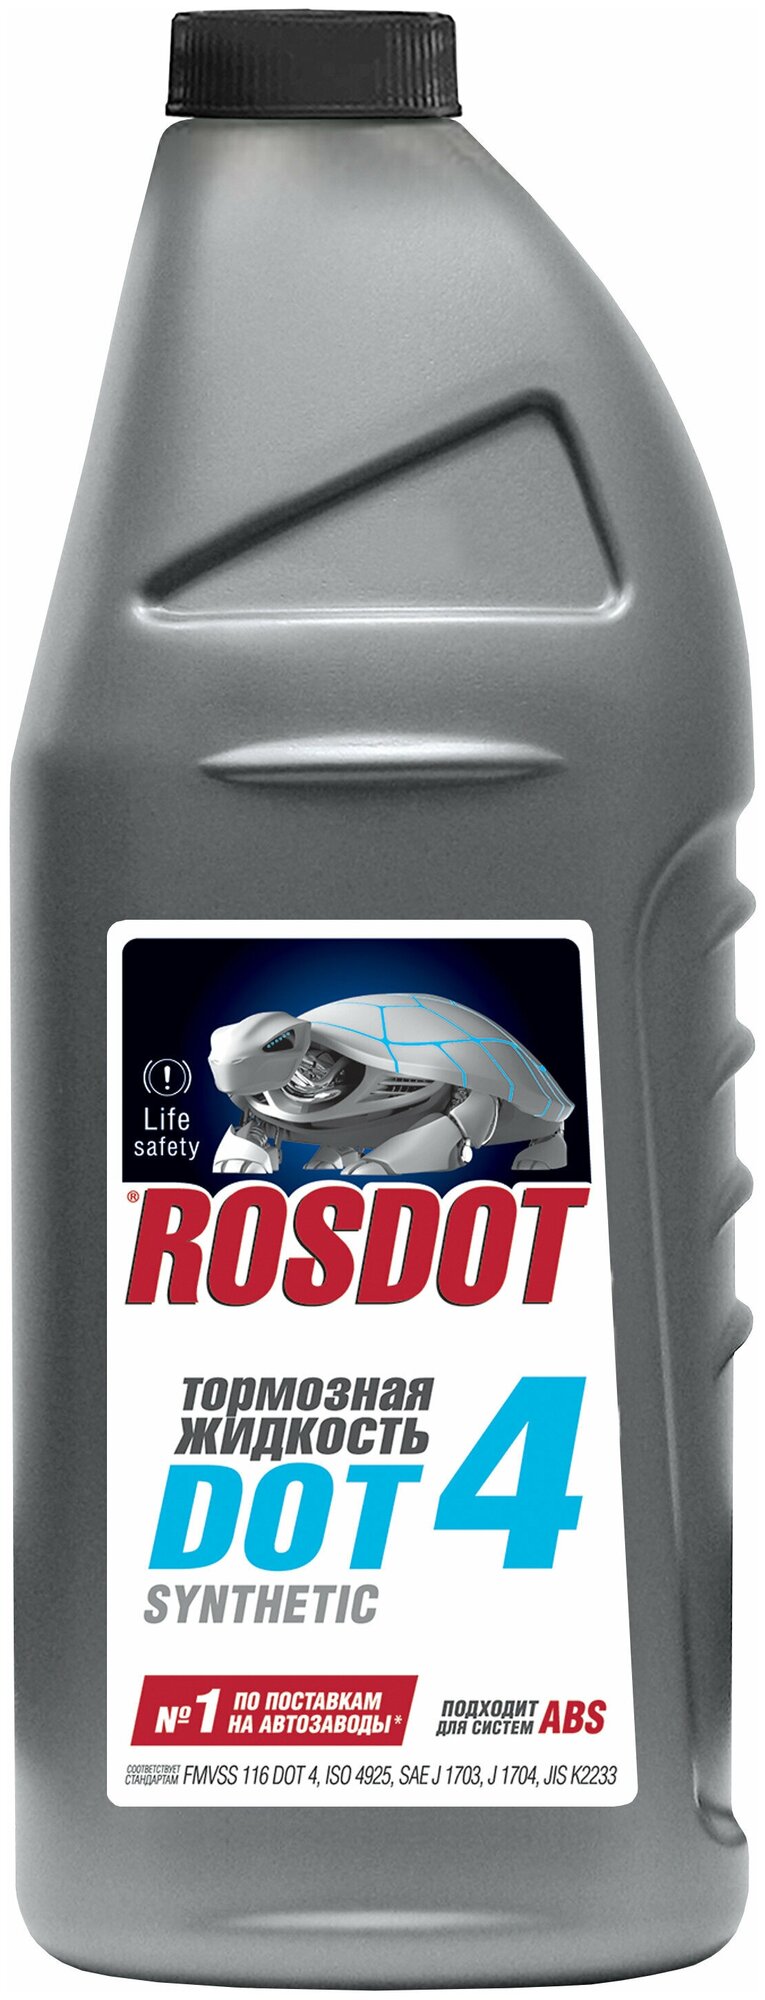   ROSDOT DOT-4 Synthetic 43010103 0.91 